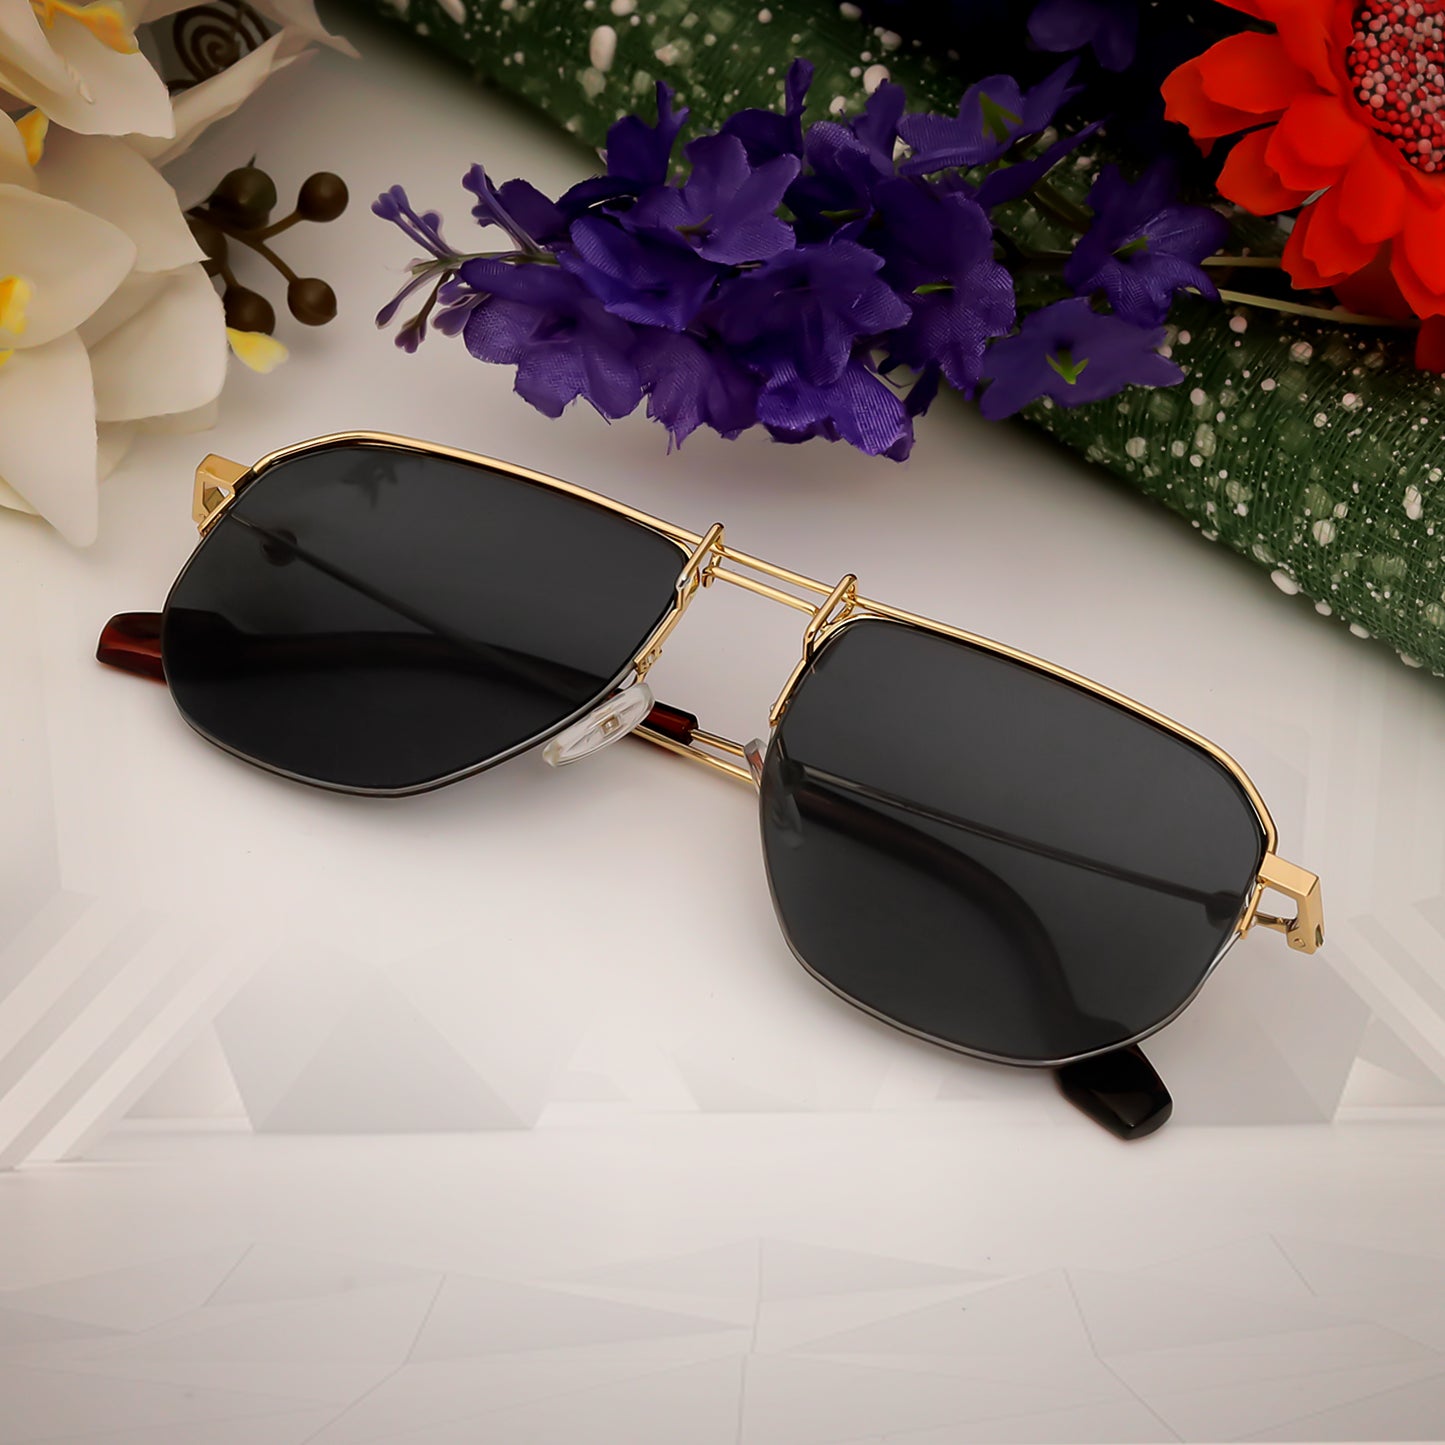 Ploy Gold And Black Retro Square Sunglasses